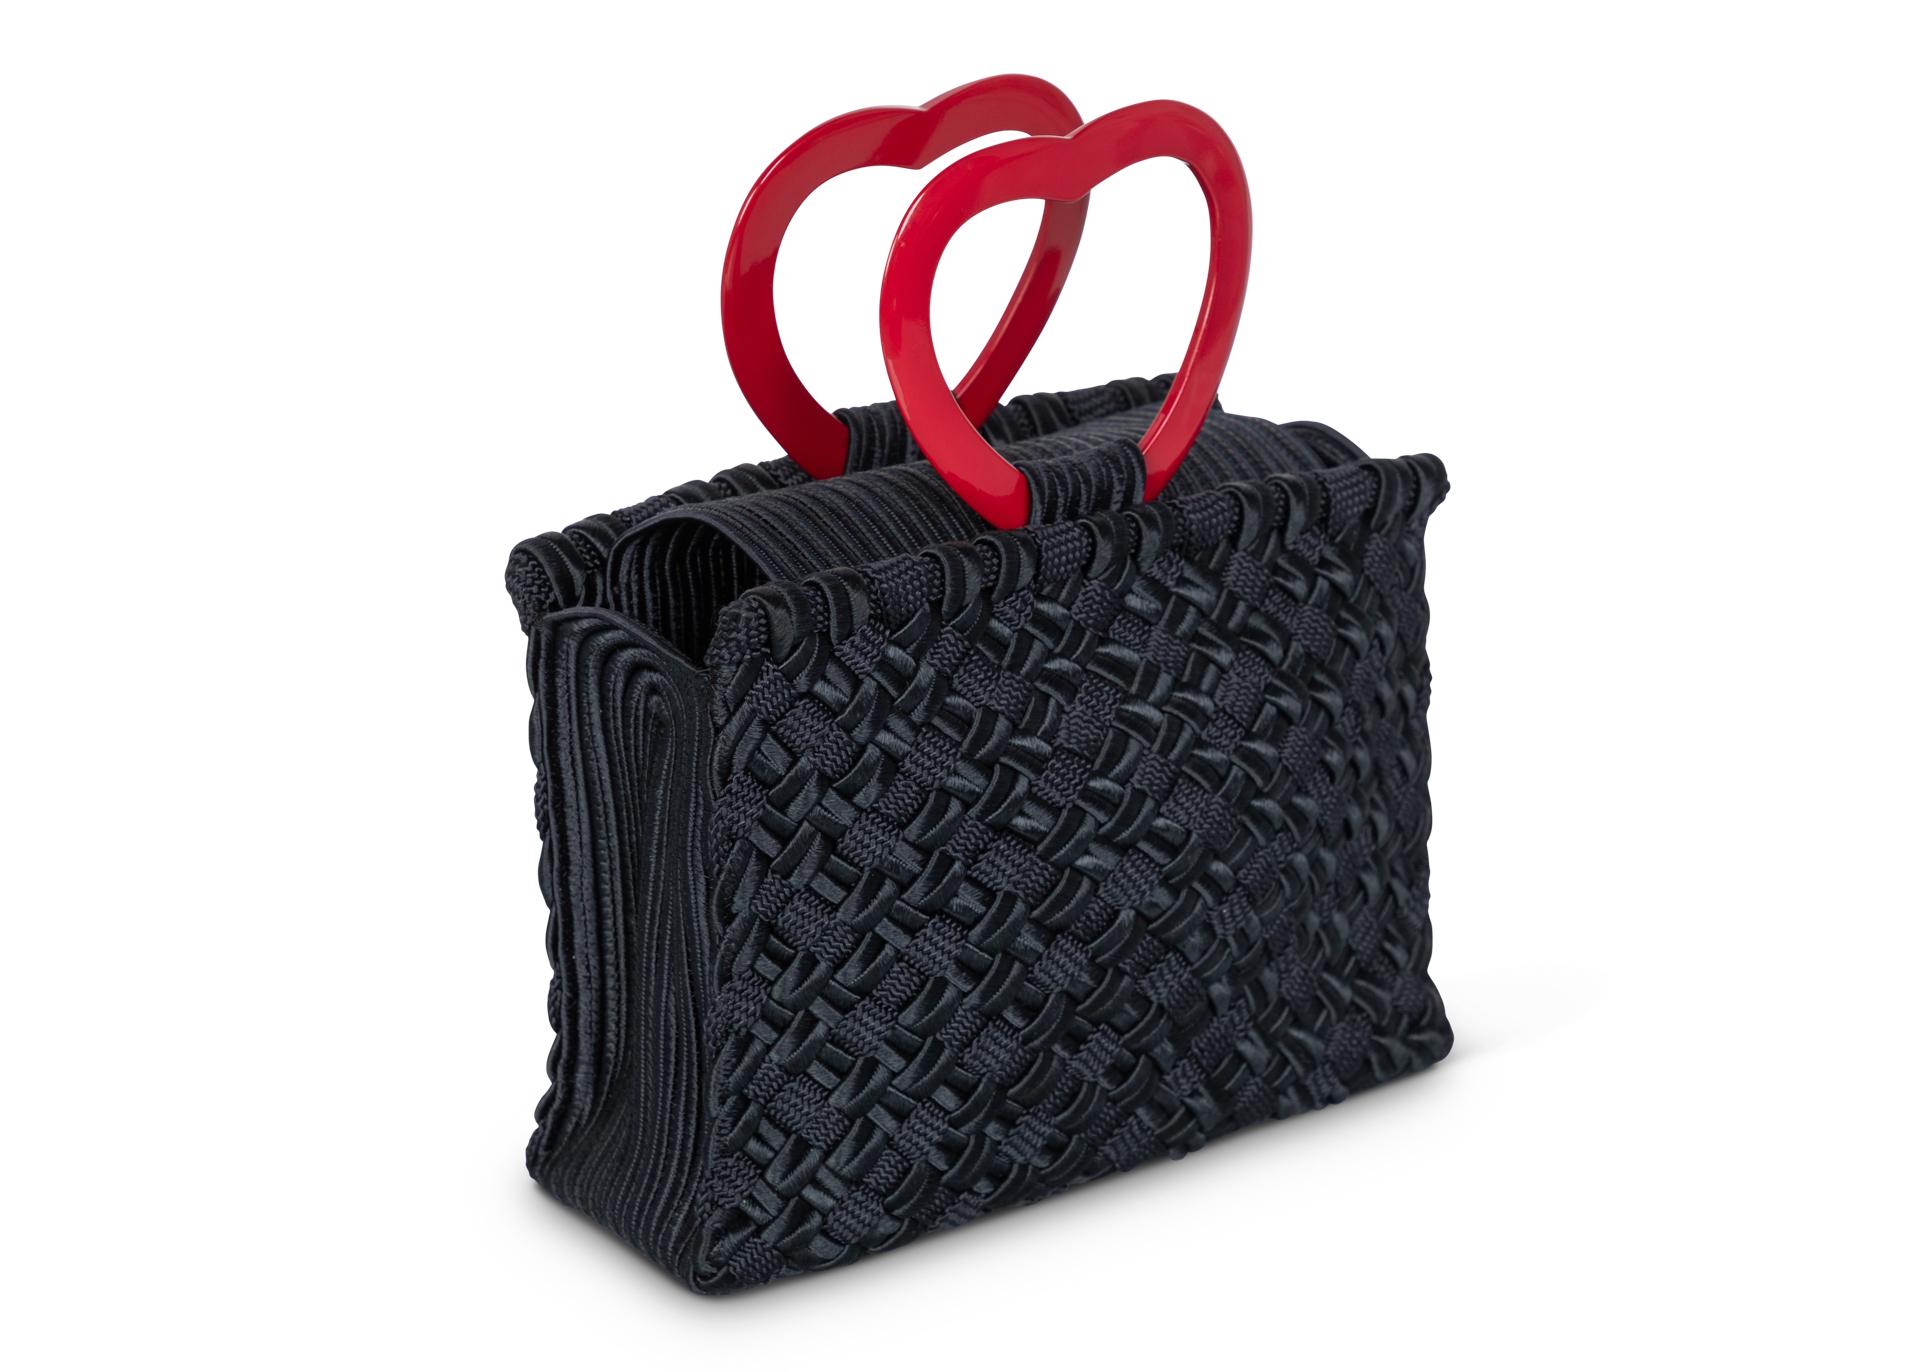 Vintage Yves Saint Laurent Passementerie Lucite Henkeltasche. Die Herzhenkel sind aus glänzendem rotem Lucite, und der Körper der Tasche ist schwarz und wunderschön gewebt, eine Mischung aus drei verschiedenen Texturen.
In ausgezeichnetem Zustand.